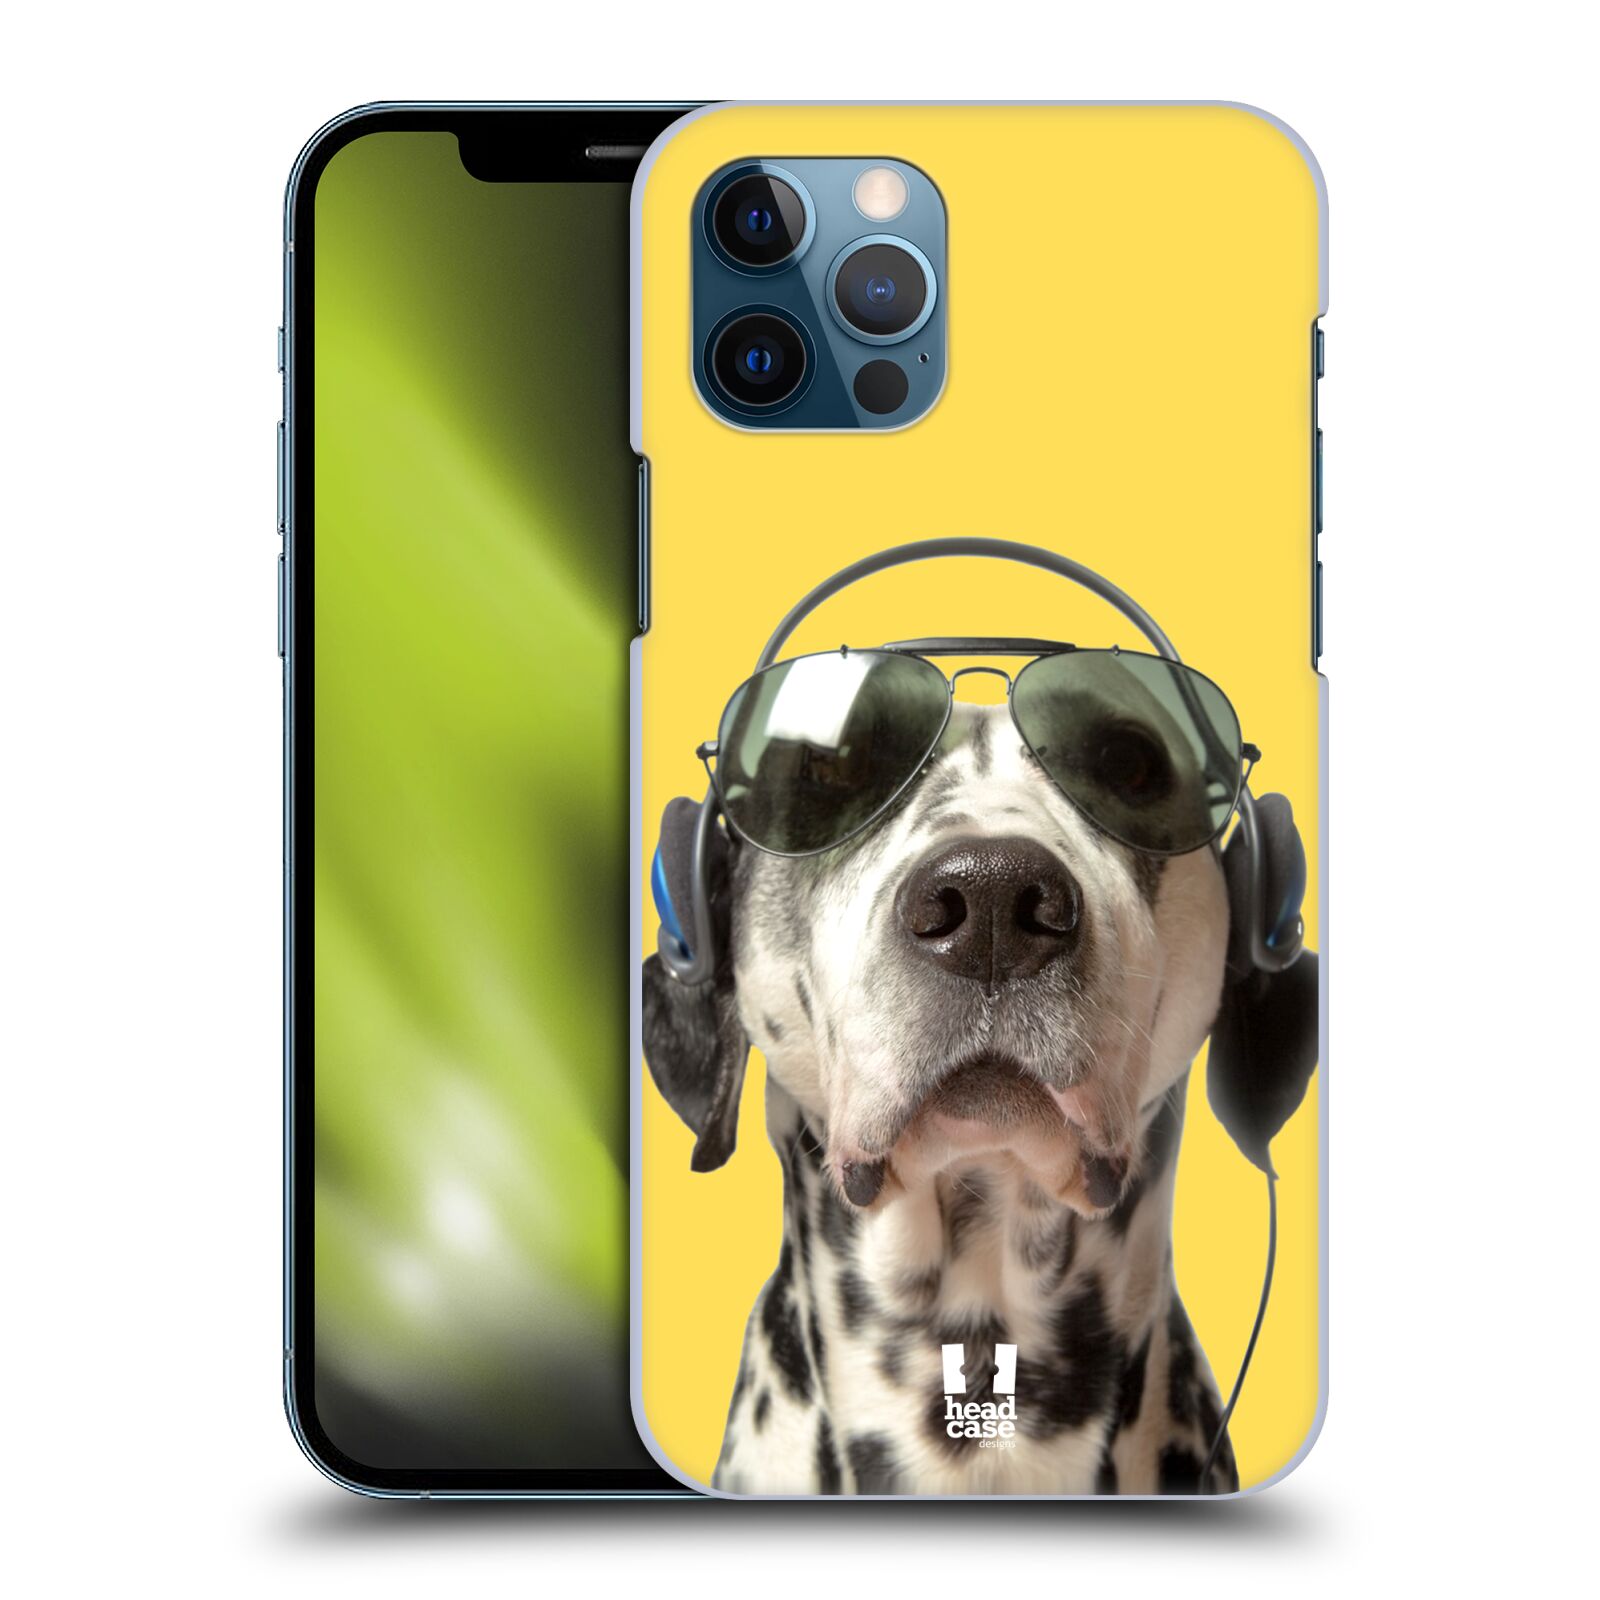 HEAD CASE plastový obal na mobil Apple Iphone 12 / Iphone 12 PRO vzor Legrační zvířátka dalmatin se sluchátky žlutá